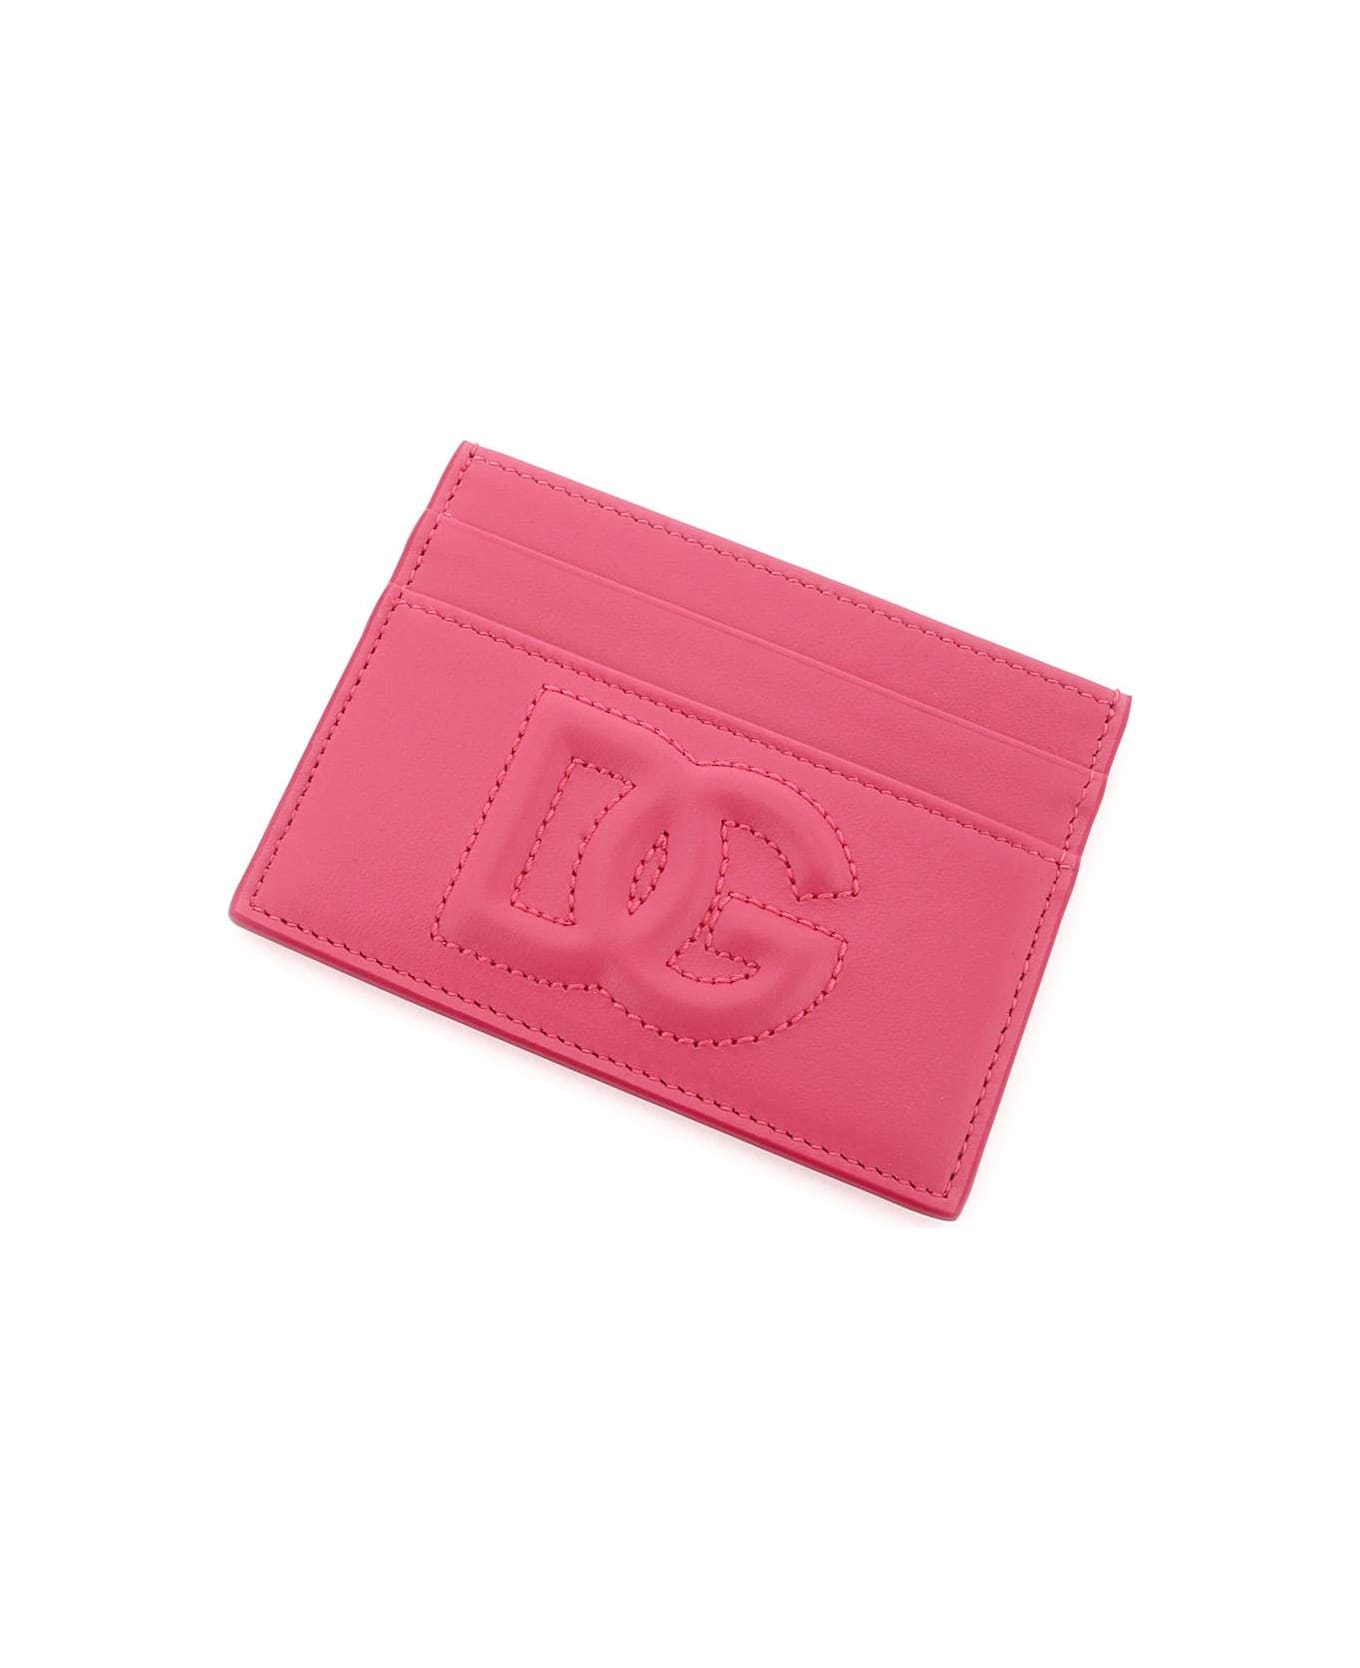 Dolce & Gabbana Leather Card Holder - Lilac